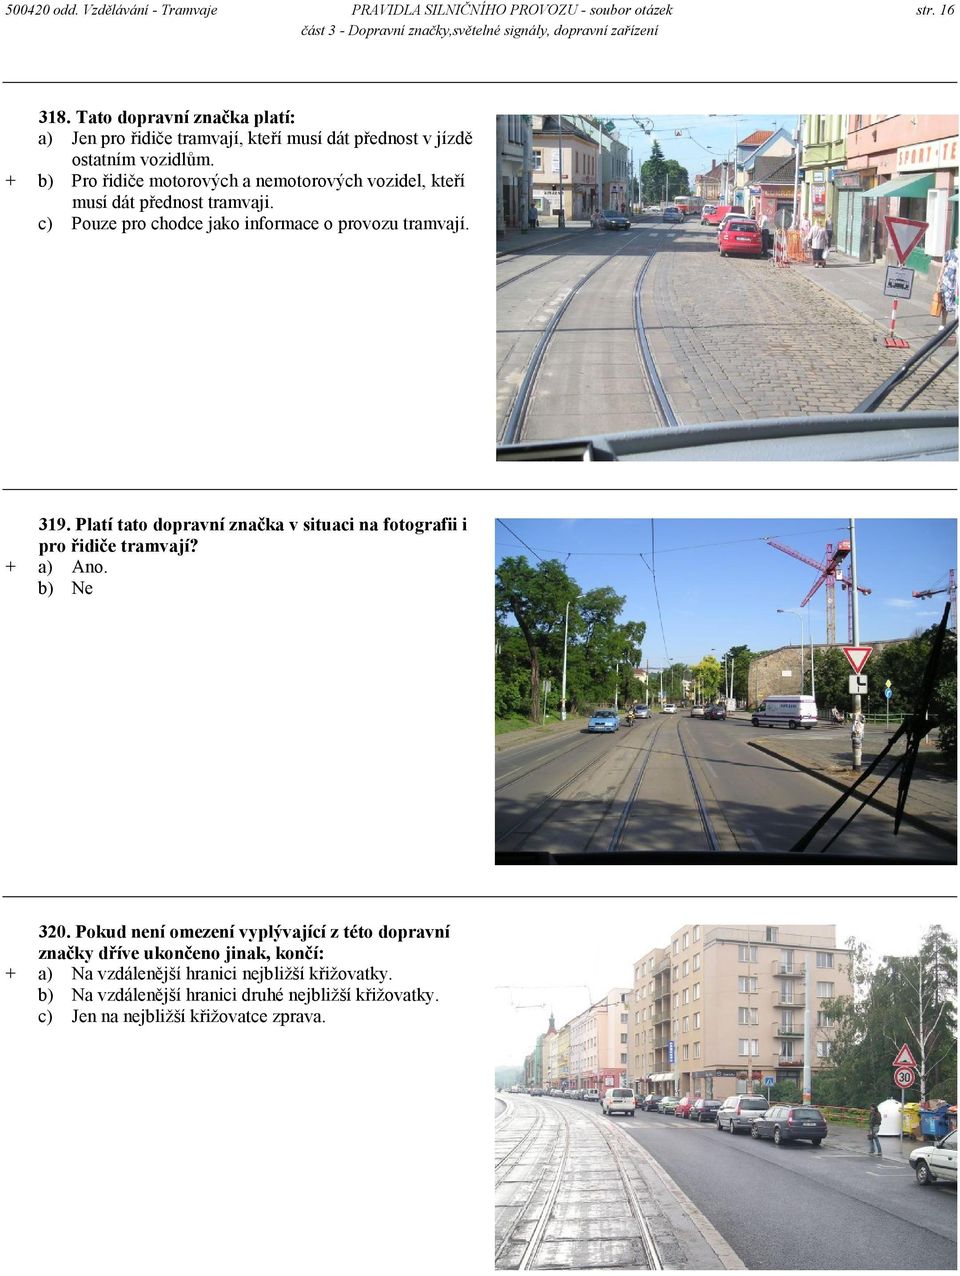 + b) Pro řidiče motorových a nemotorových vozidel, kteří musí dát přednost tramvaji. c) Pouze pro chodce jako informace o provozu tramvají. 319.